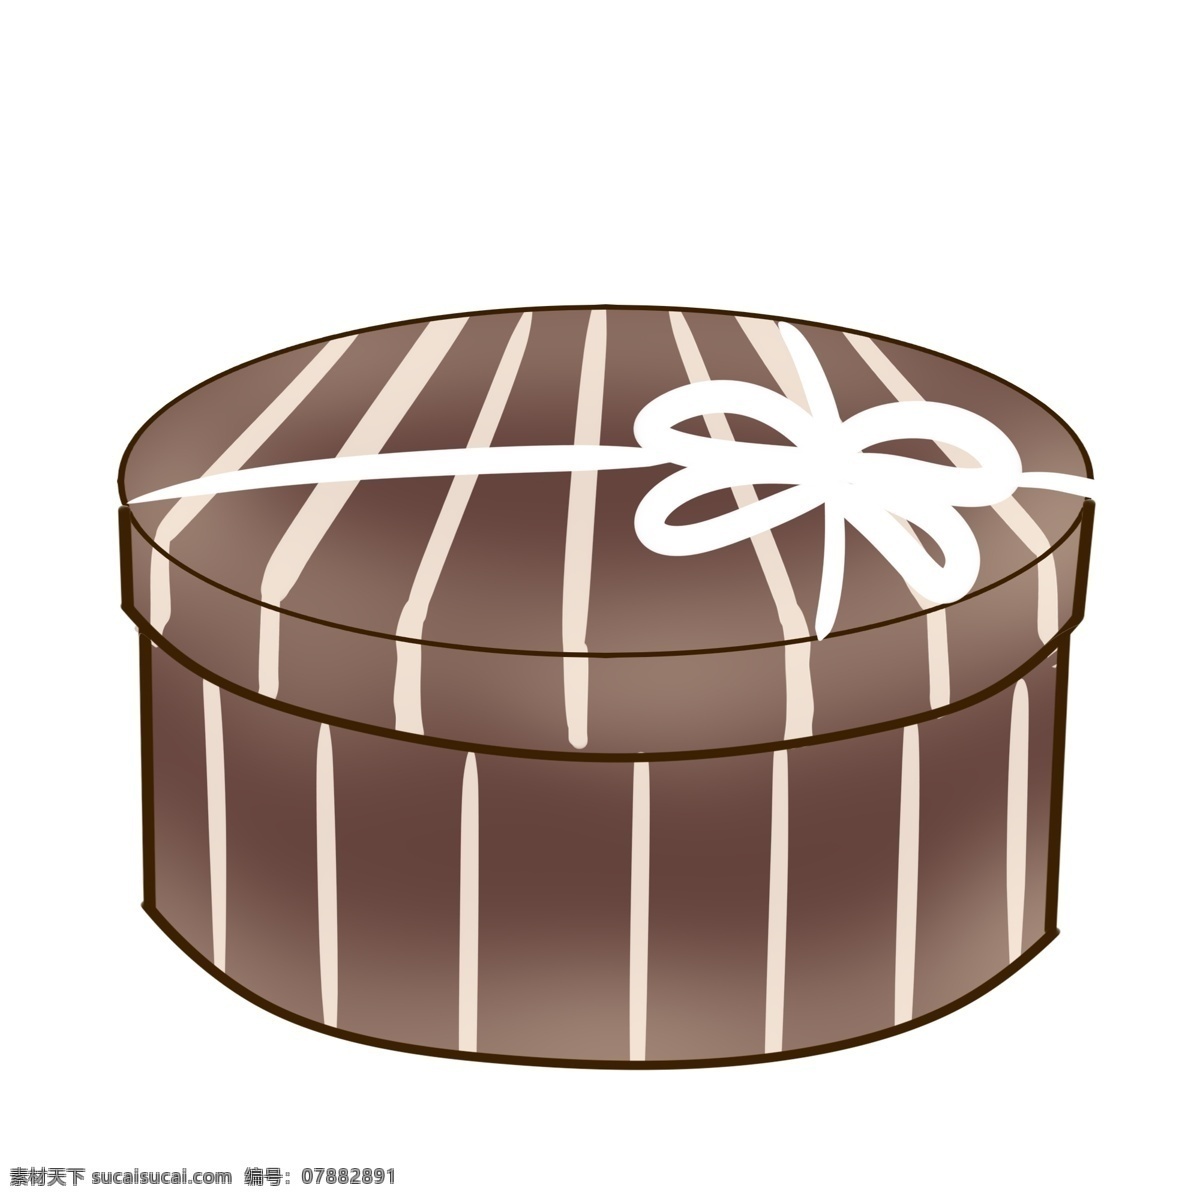 咖啡色 圆形 礼盒 礼品礼盒 系了彩带 精美的结 条纹 送人礼物 包装 装饰 方形礼盒 蝴蝶结